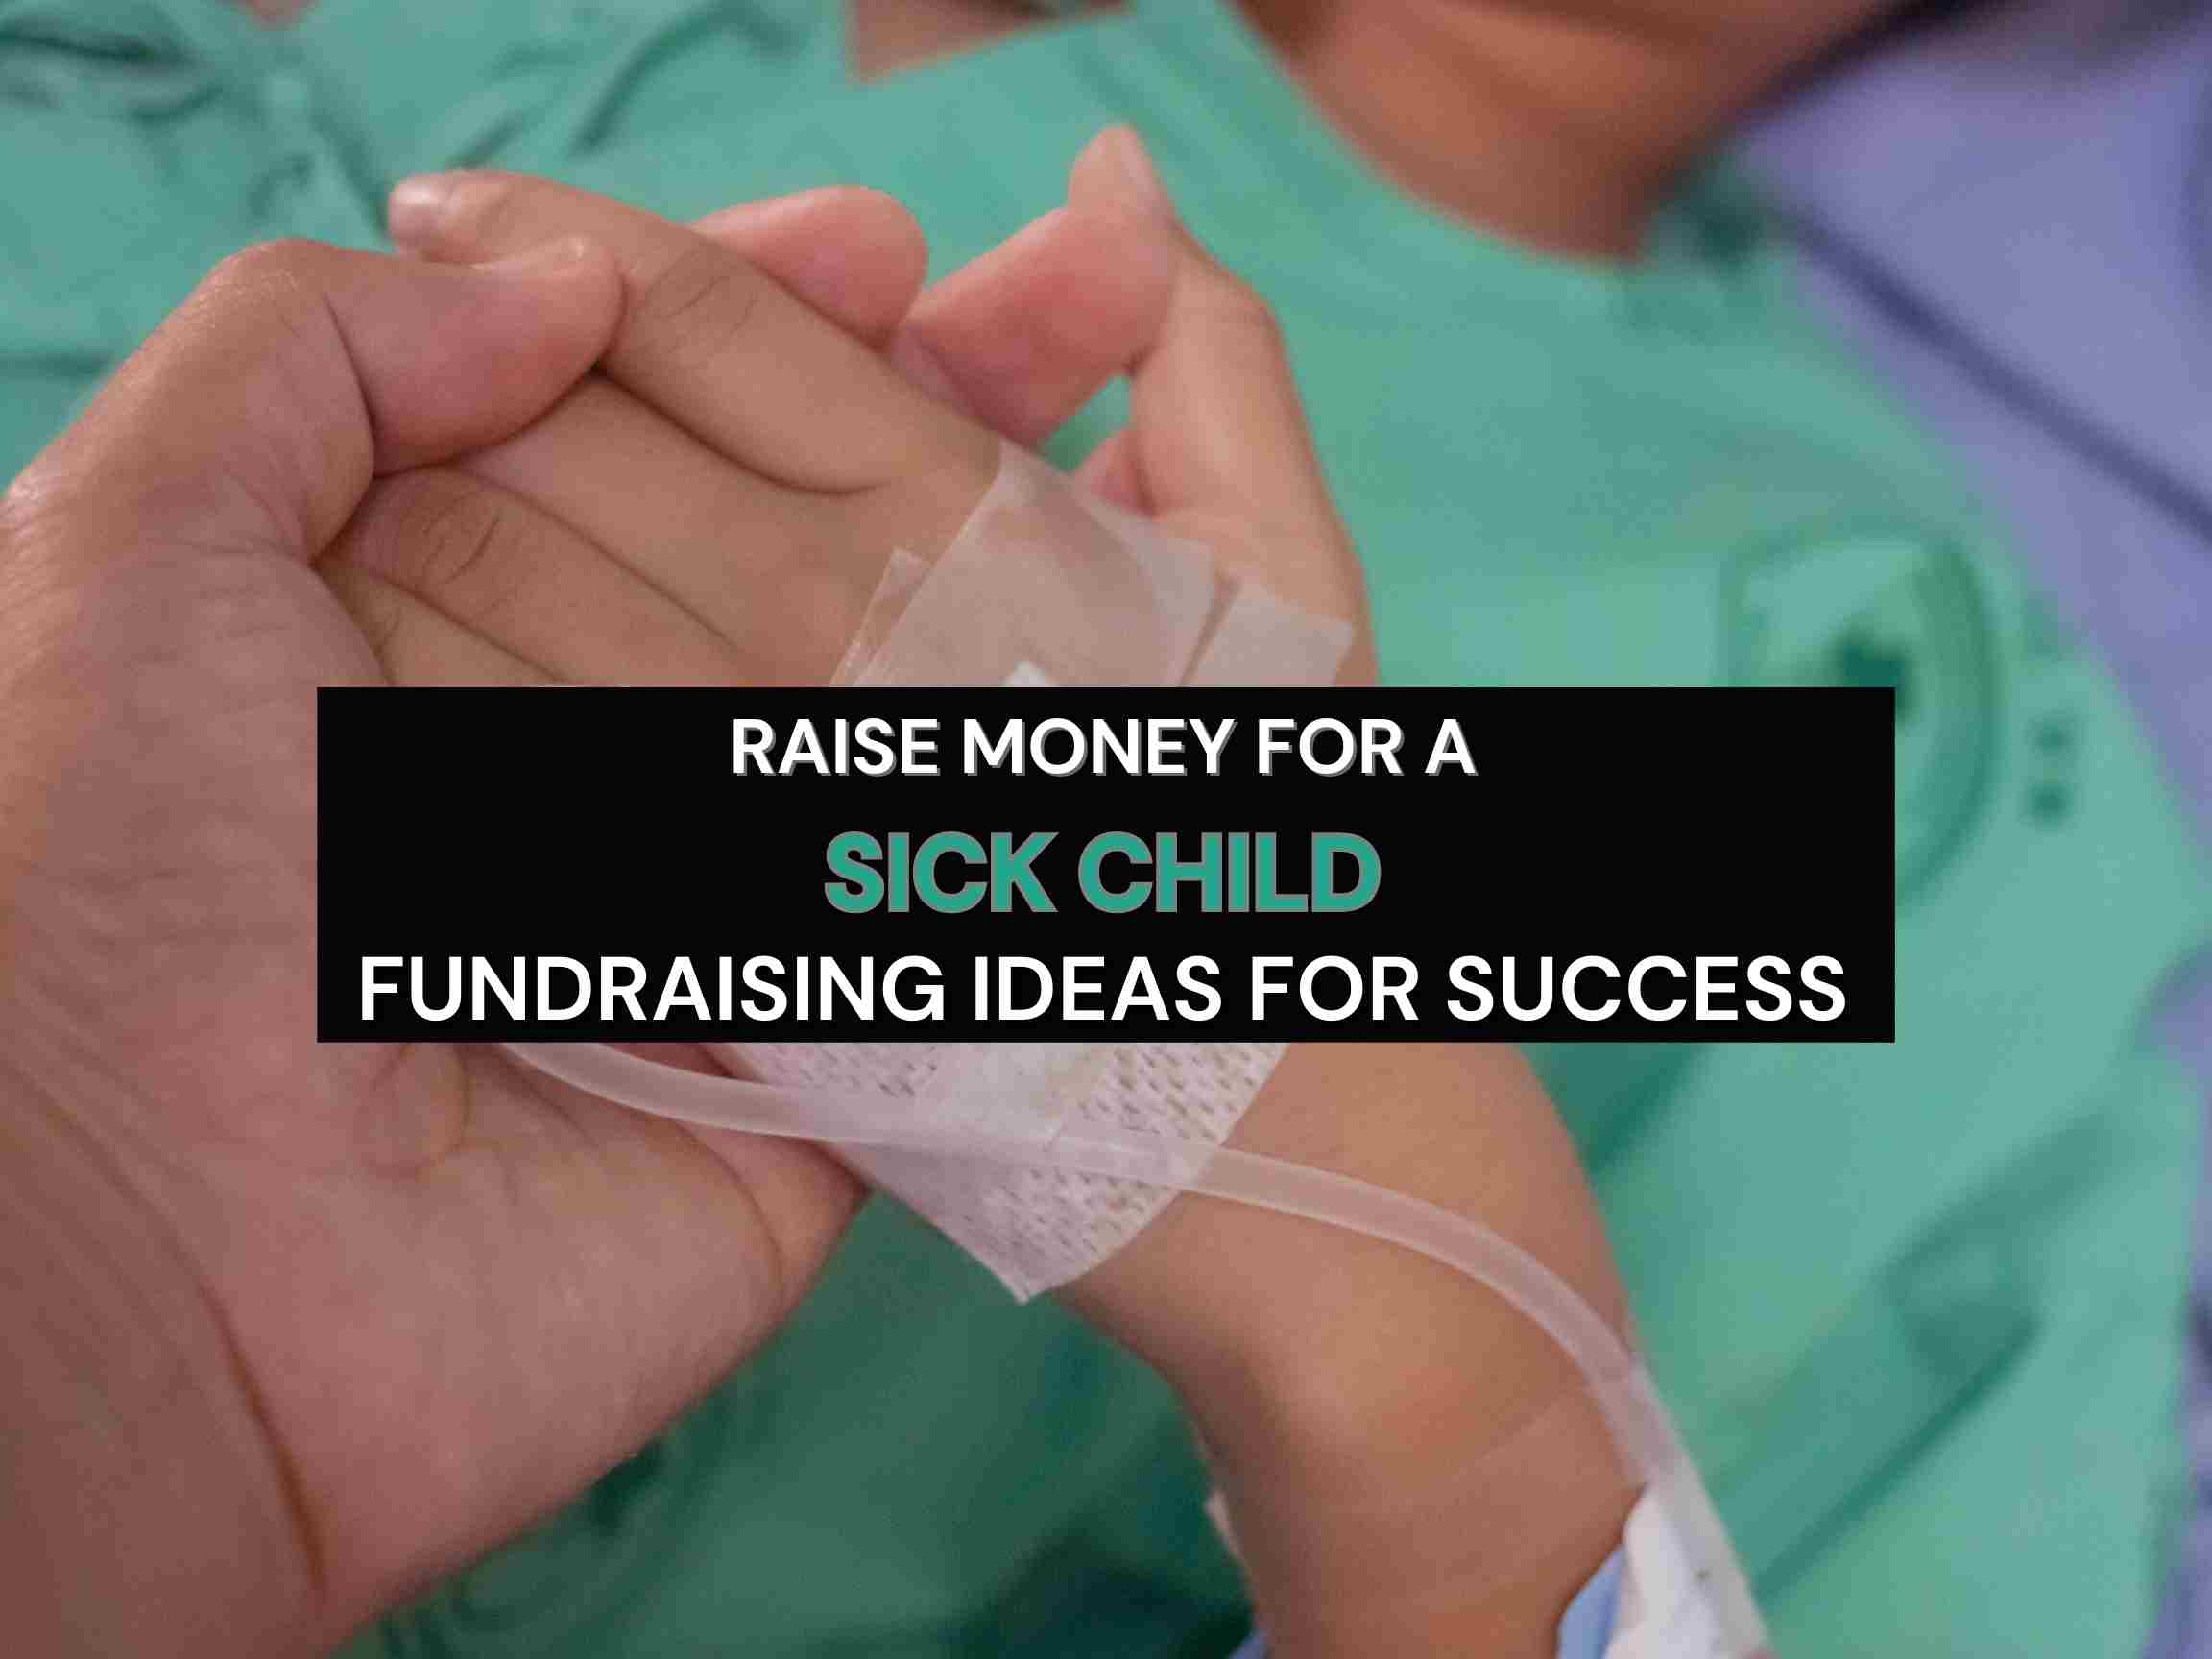 Fundraising ideas for sick child for maximum success